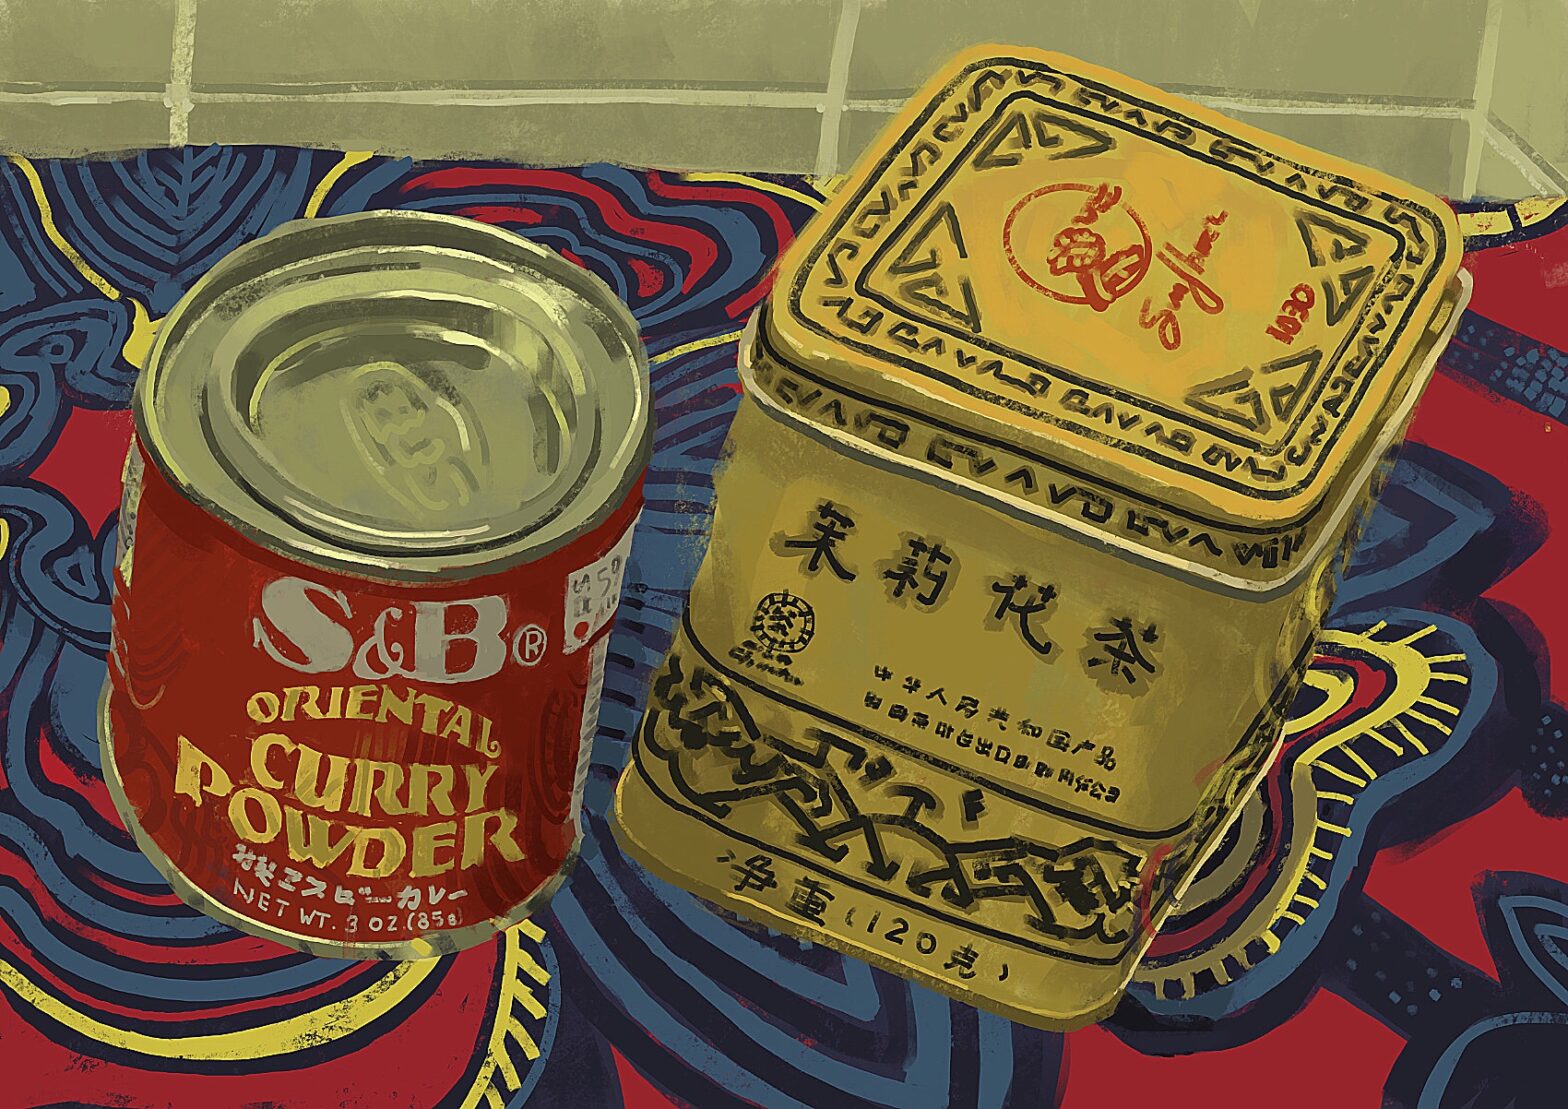 Pintura colorida com duas latas em primeiro plano. A da esquerda, onde se lê “Oriental curry powder” é menor, cilíndrica e vermelha. A outra é um paralelepípedo amarelo com caracteres chineses. Cobrindo a superfície, tem uma toalha estampada colorida